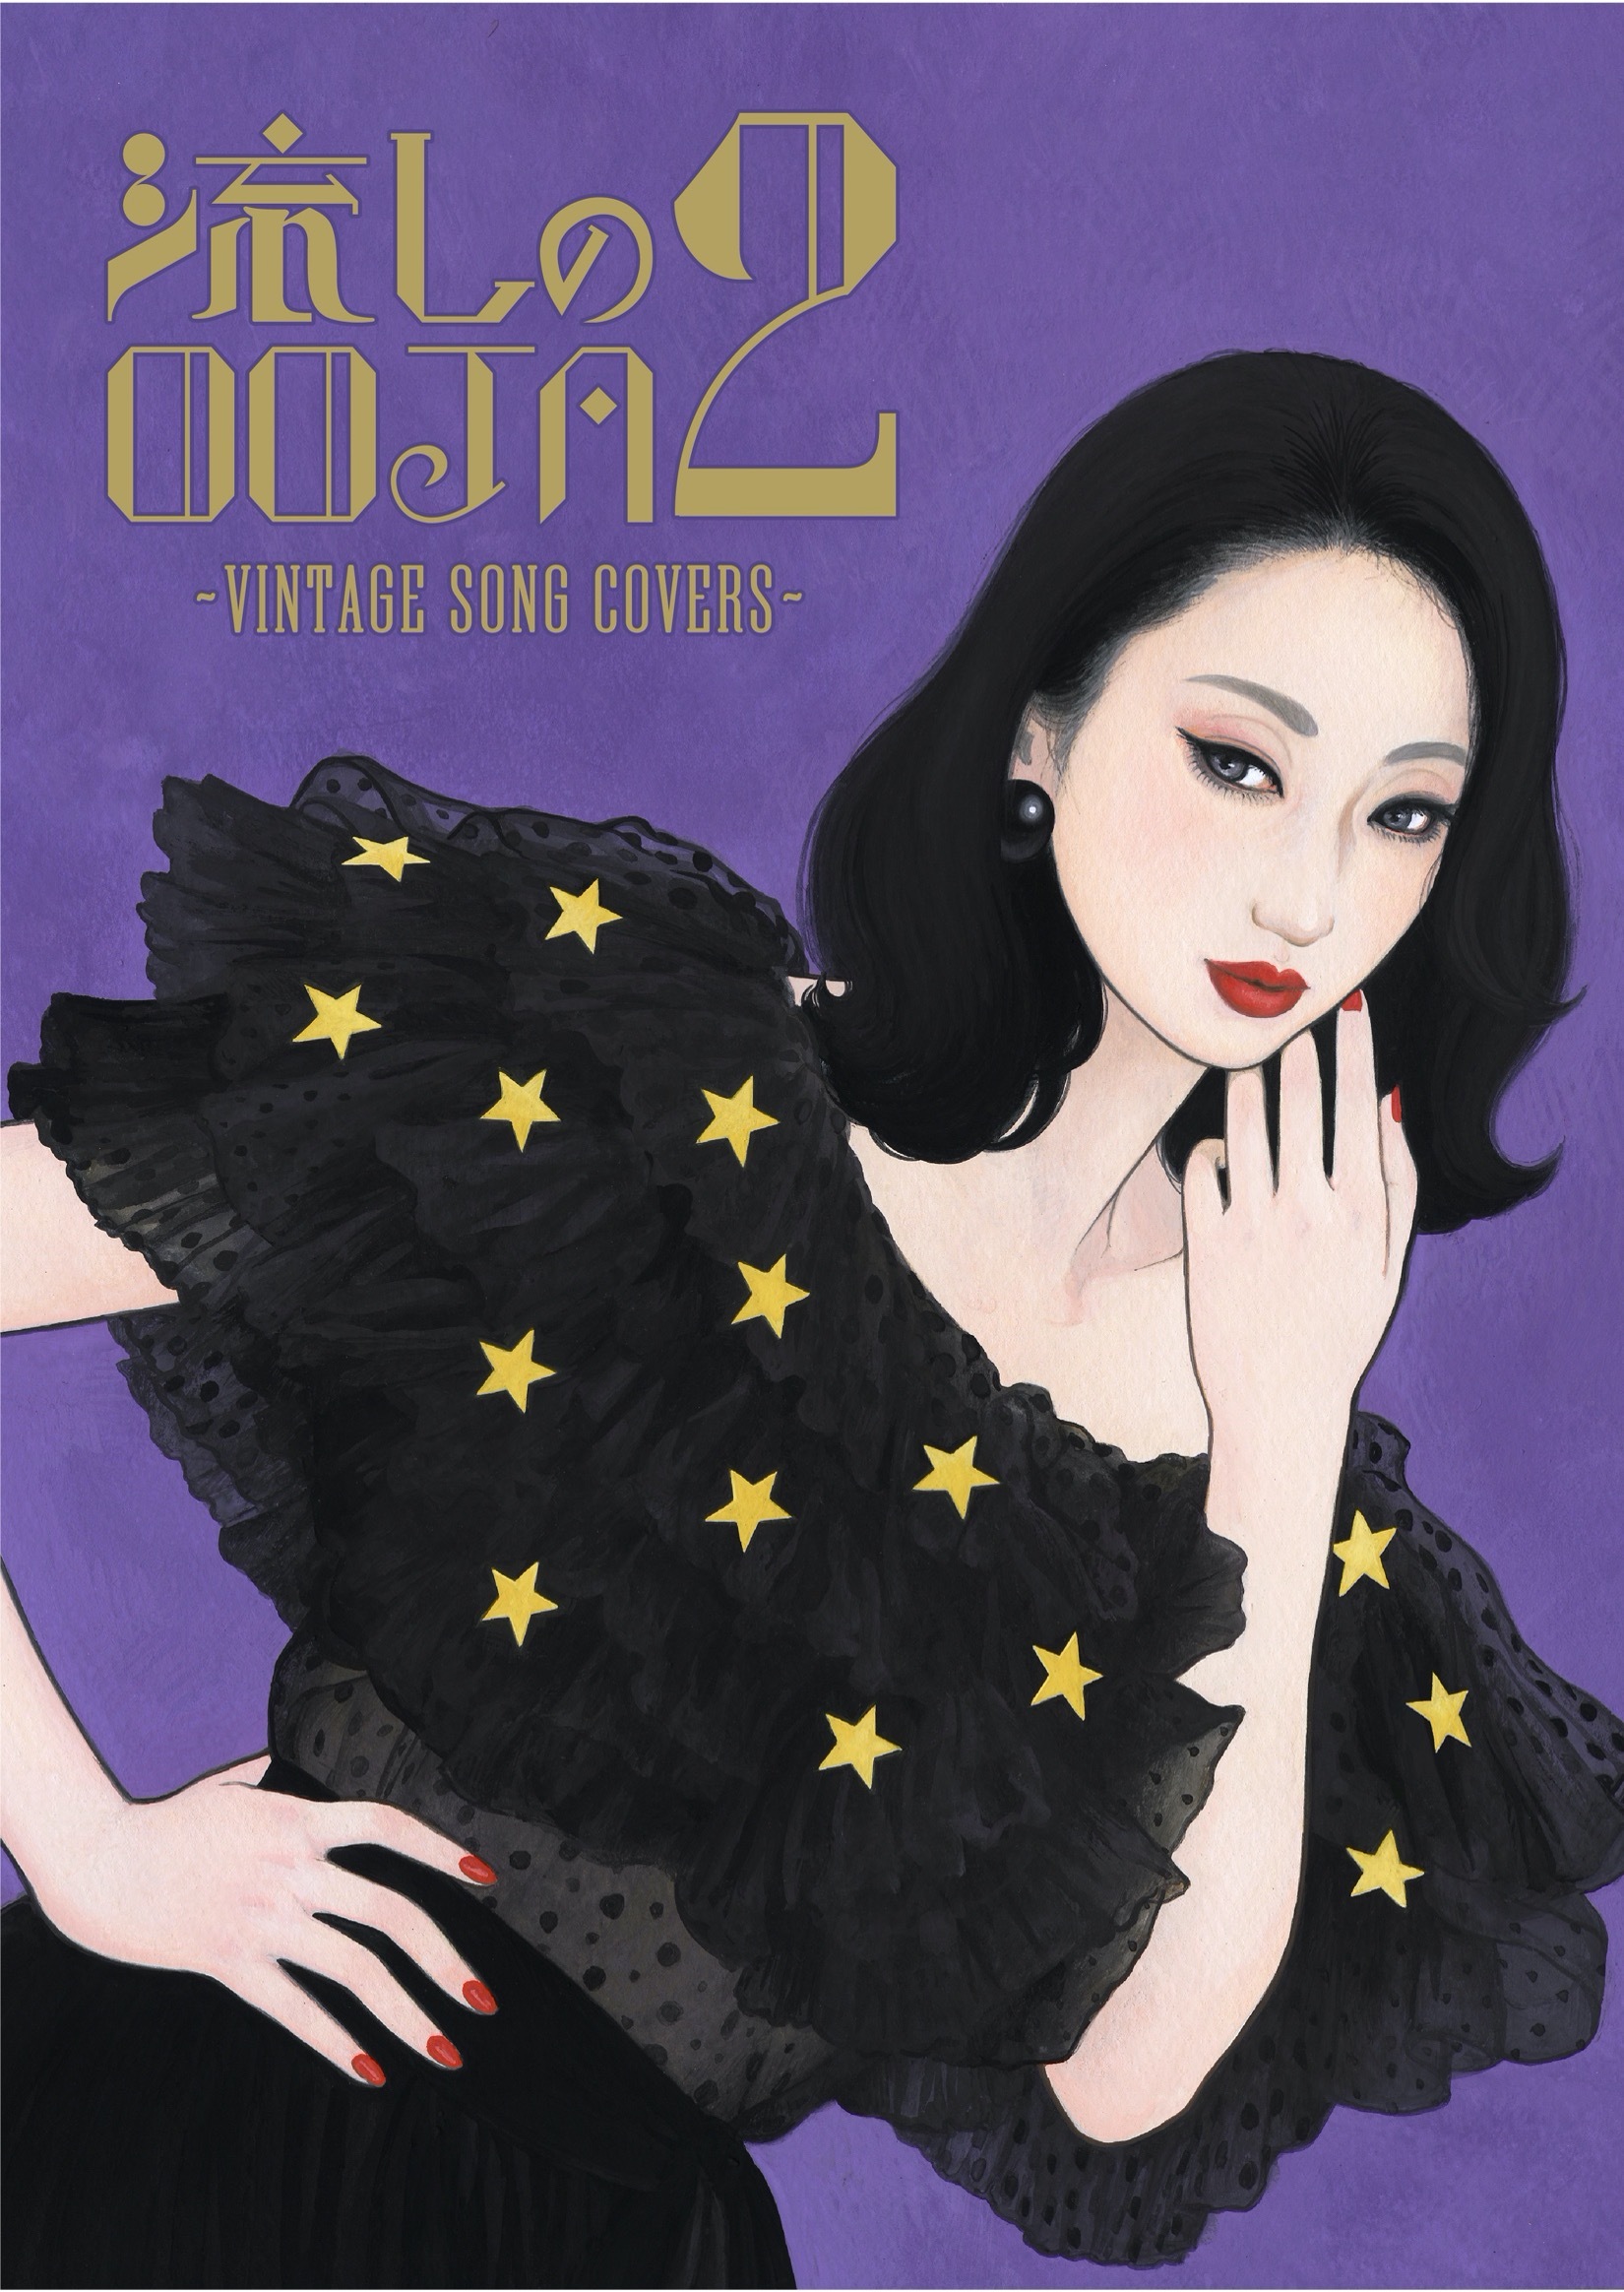 『流しのOOJA 2 〜VINTAGE SONG COVERS〜』初回盤ジャケット